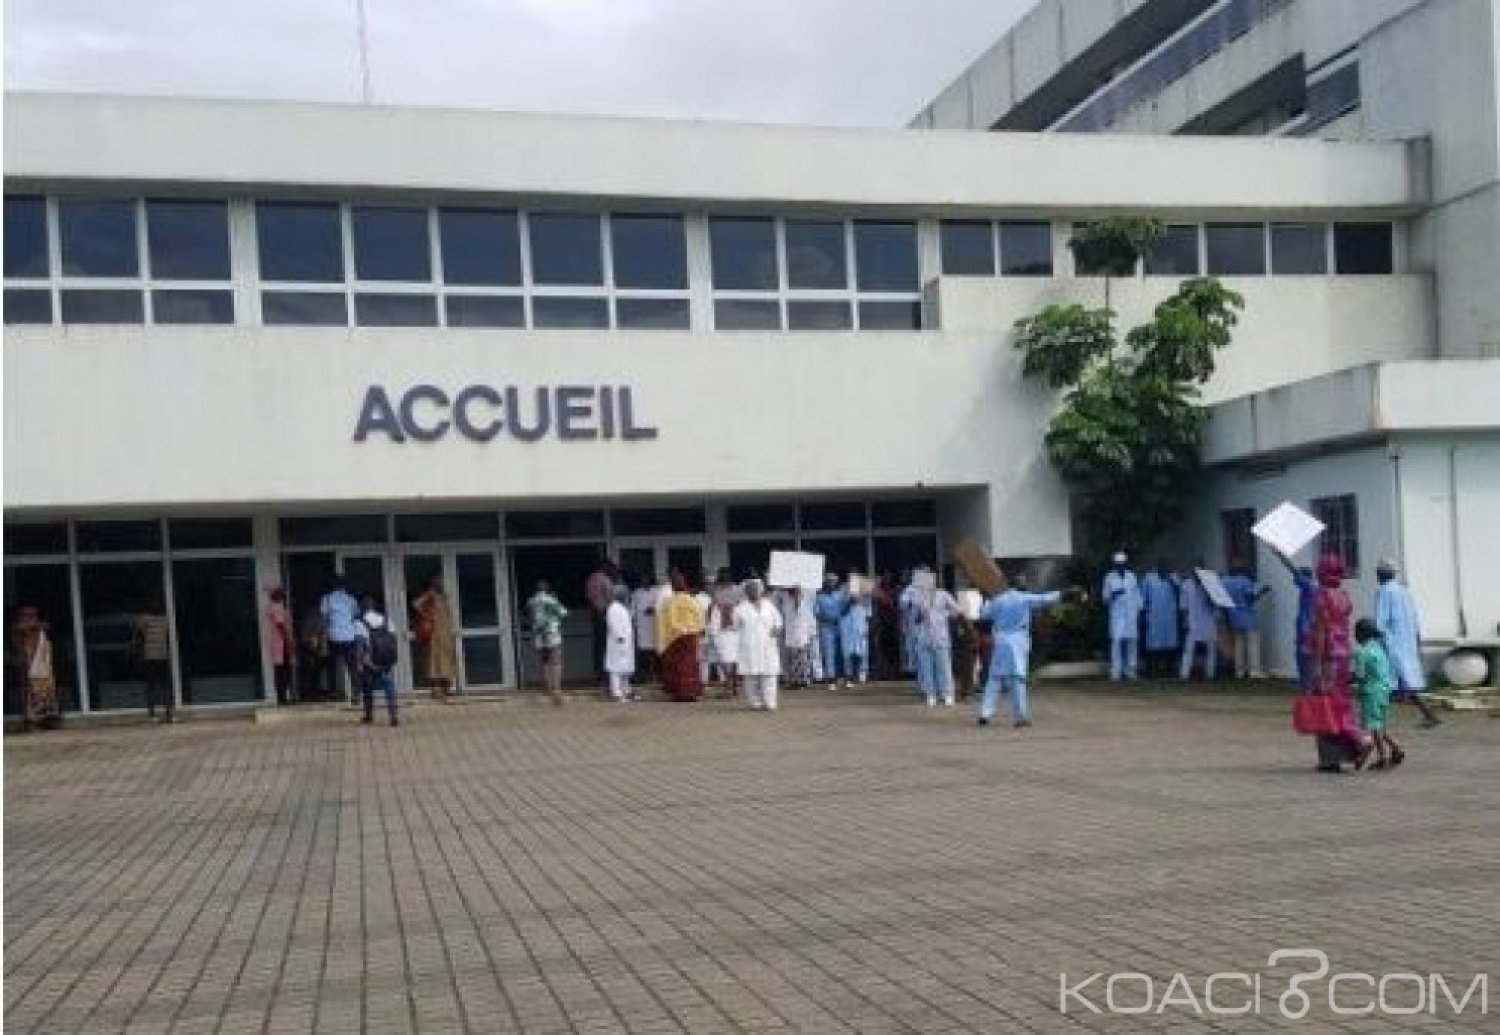 Côte d'Ivoire: Prochaine entrée en grève des agents de santé le 28 janvier